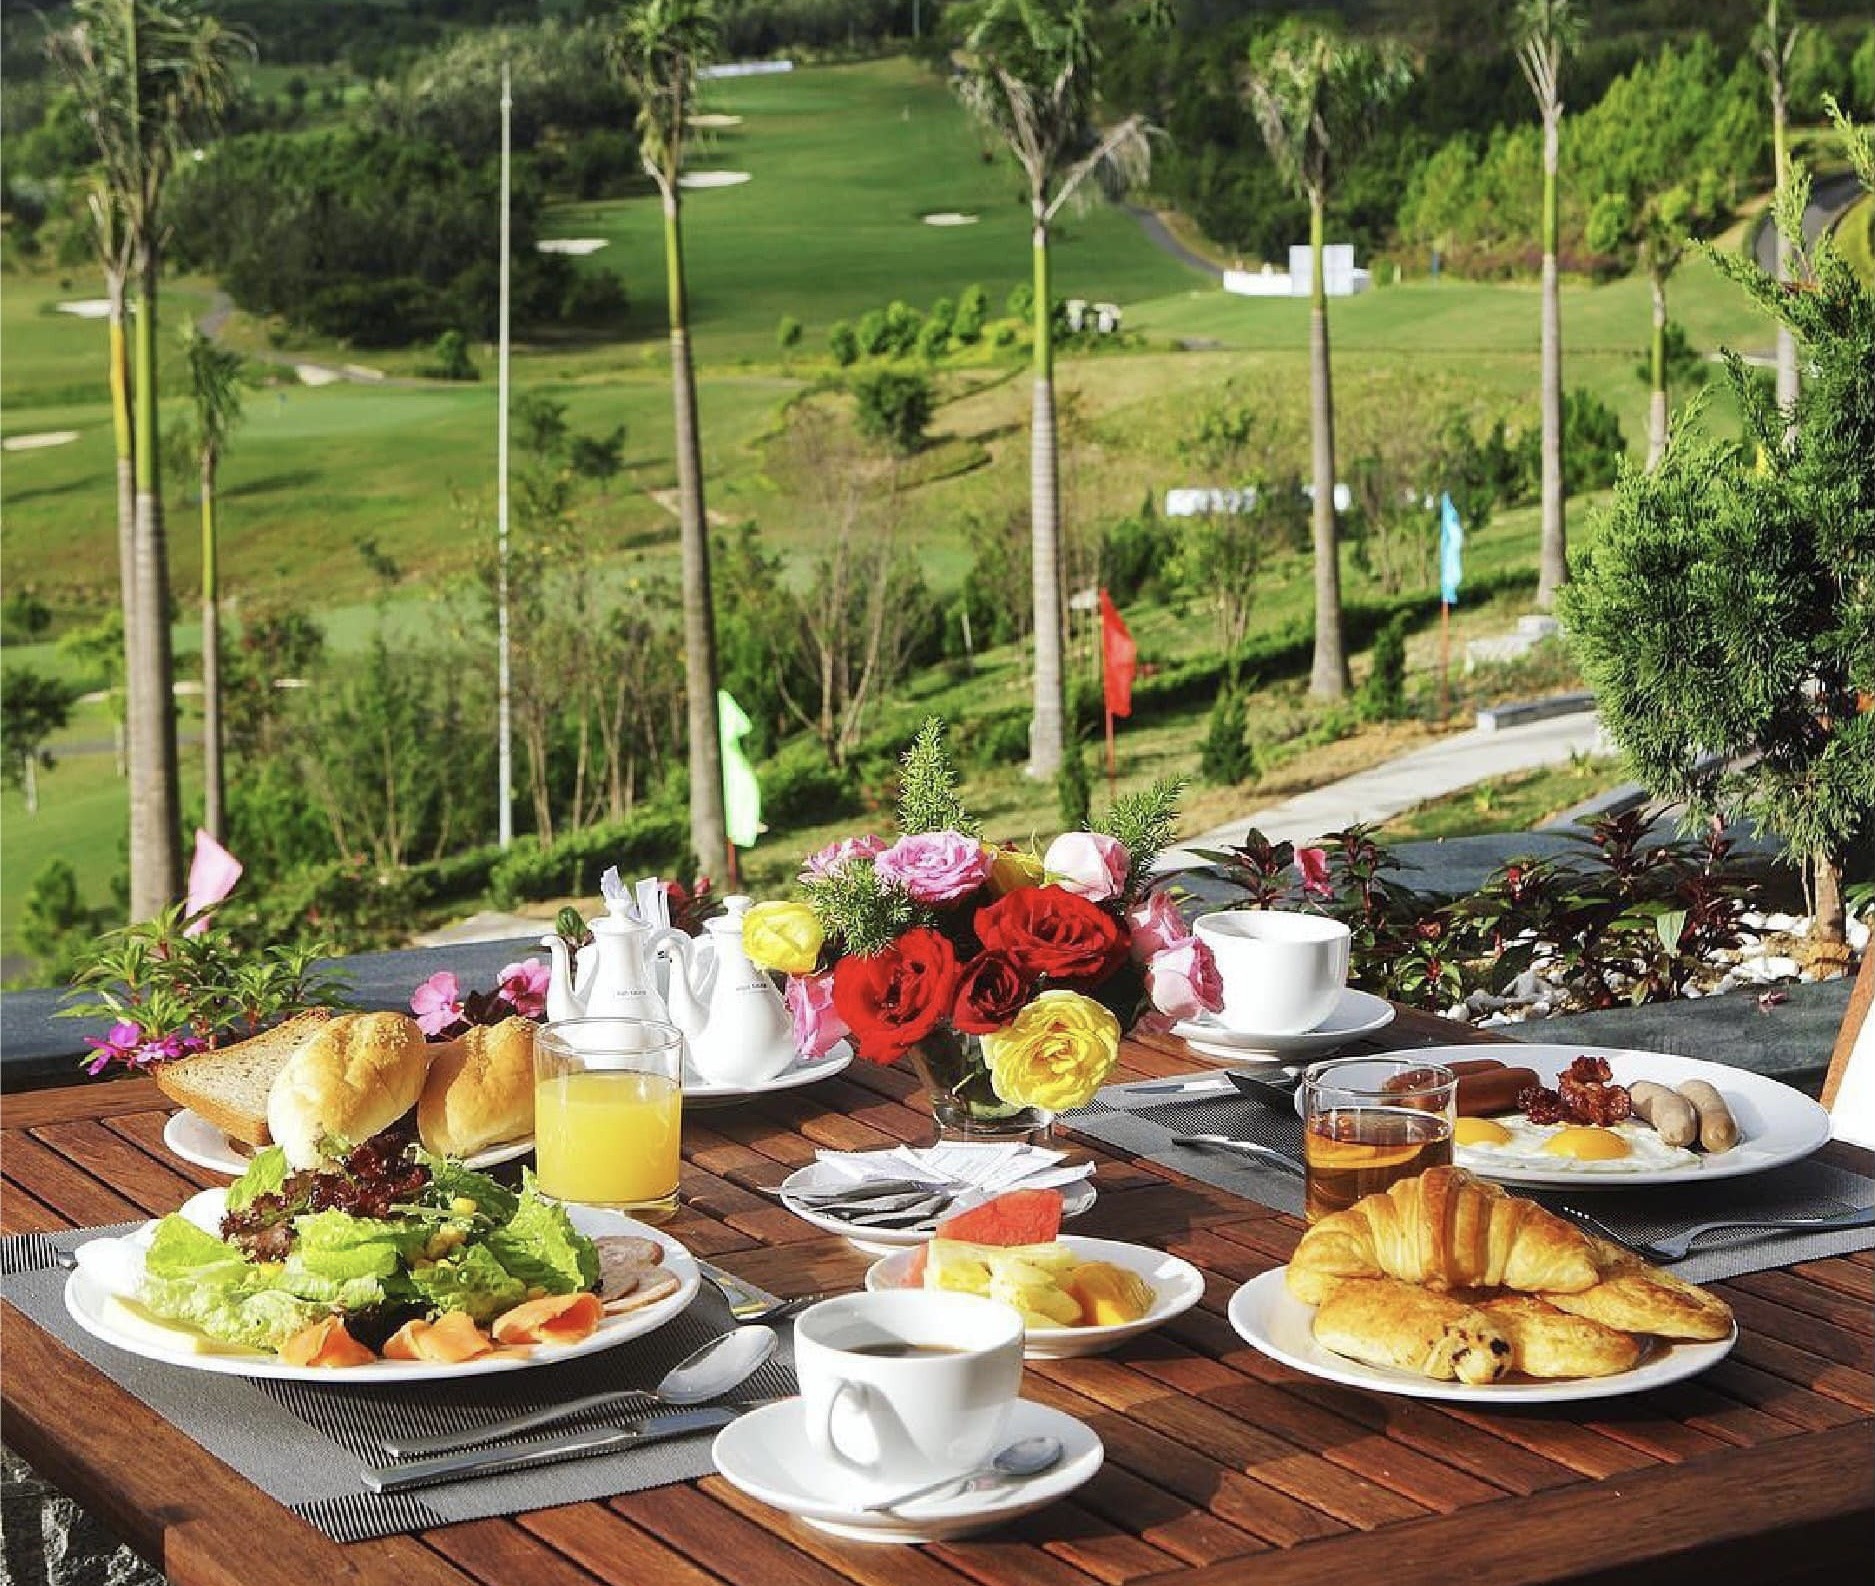 SAM Tuyền Lâm Golf & Resorts - Thiên đường golf lý tưởng tại Đà Lạt